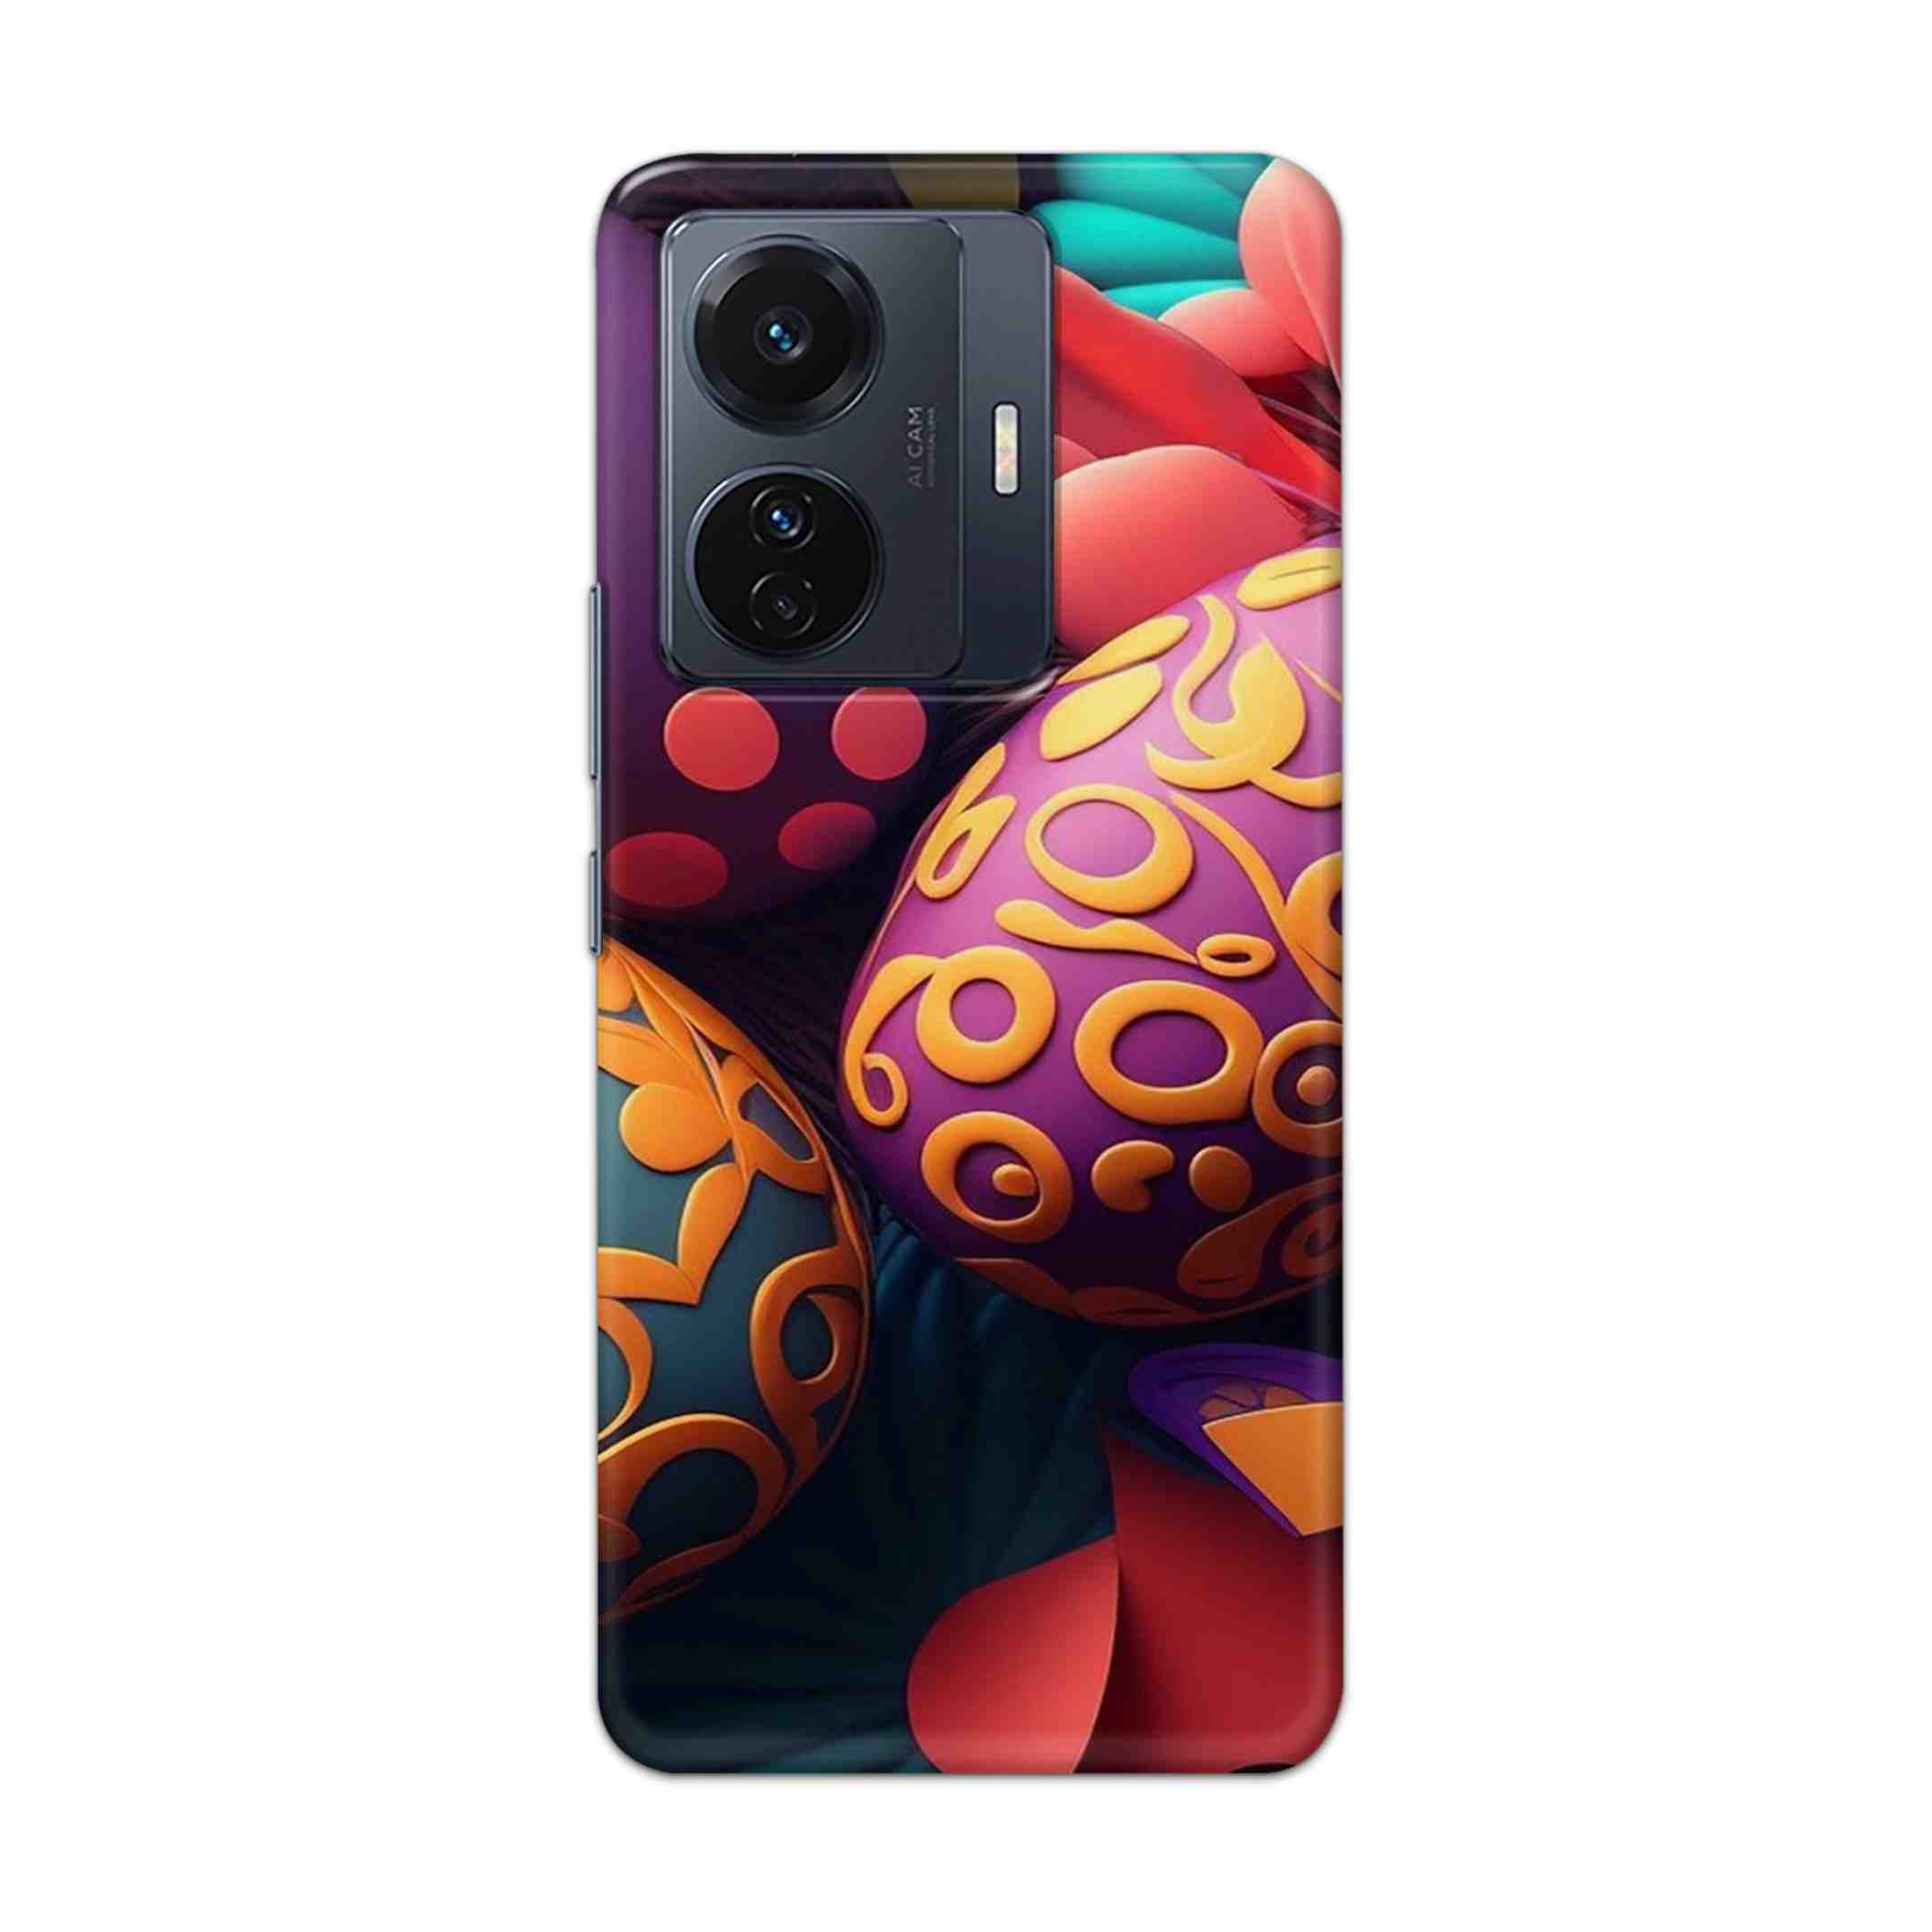 Buy Easter Egg Hard Back Mobile Phone Case Cover For Vivo T1 Pro 5G Online